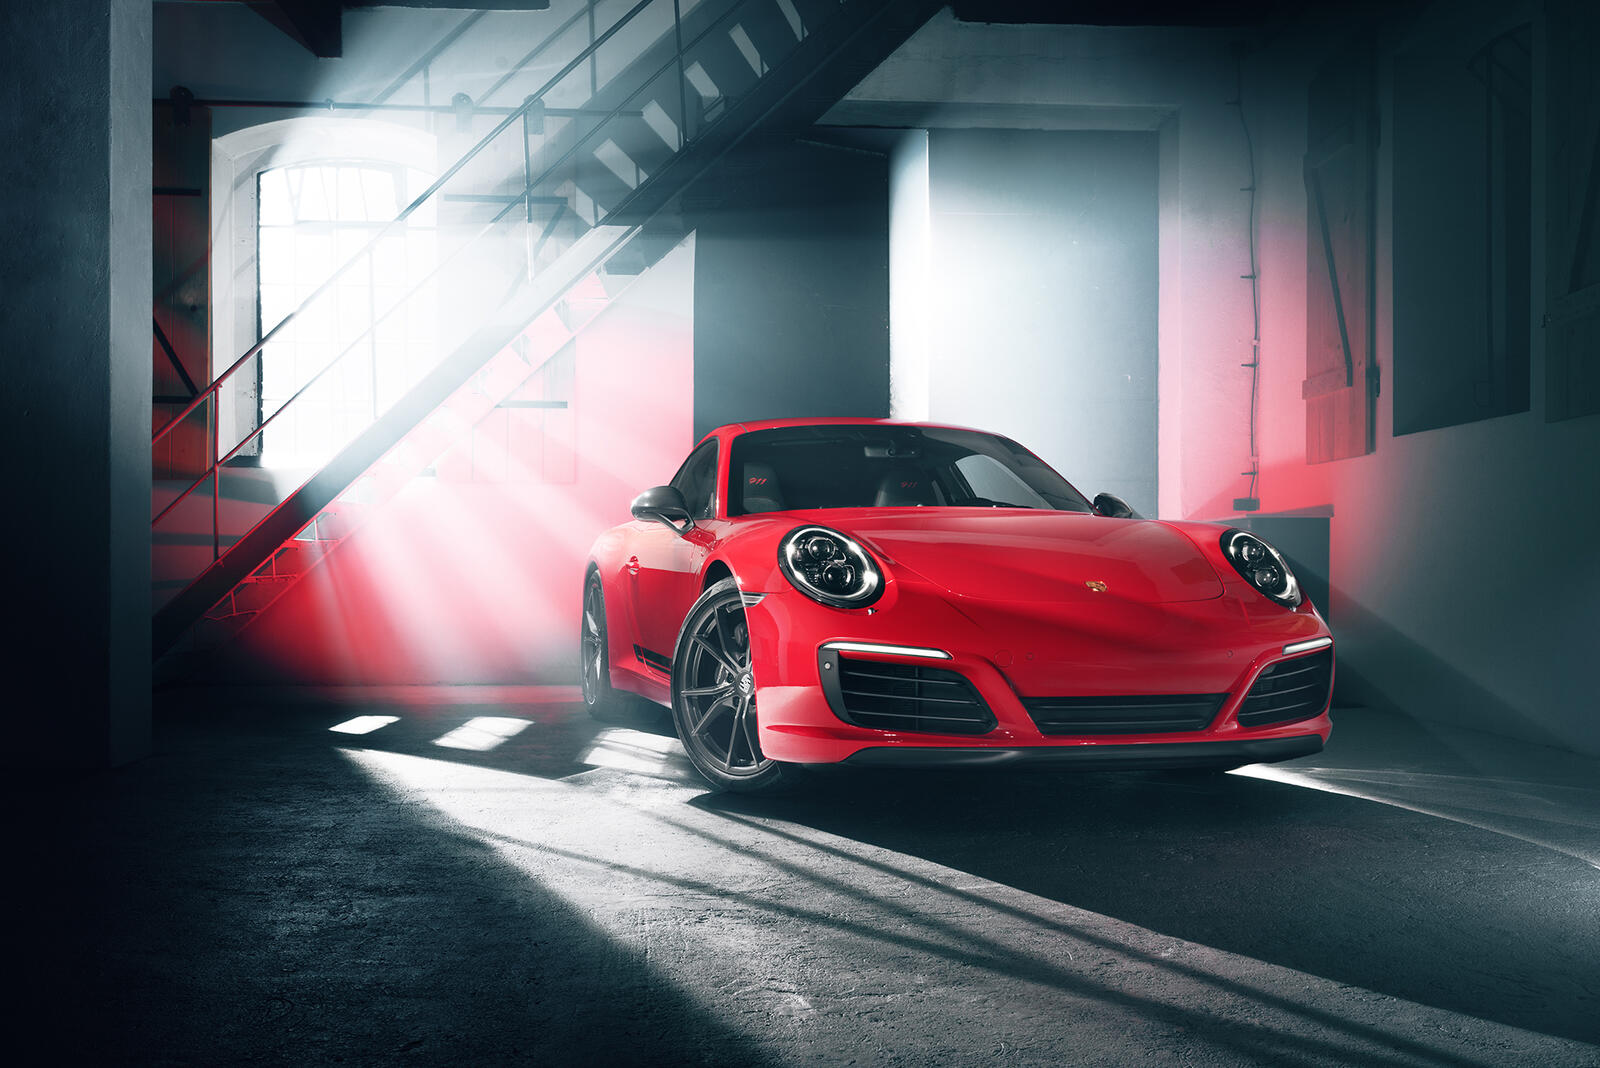 Wallpapers Behance Porsche 911 cars on the desktop